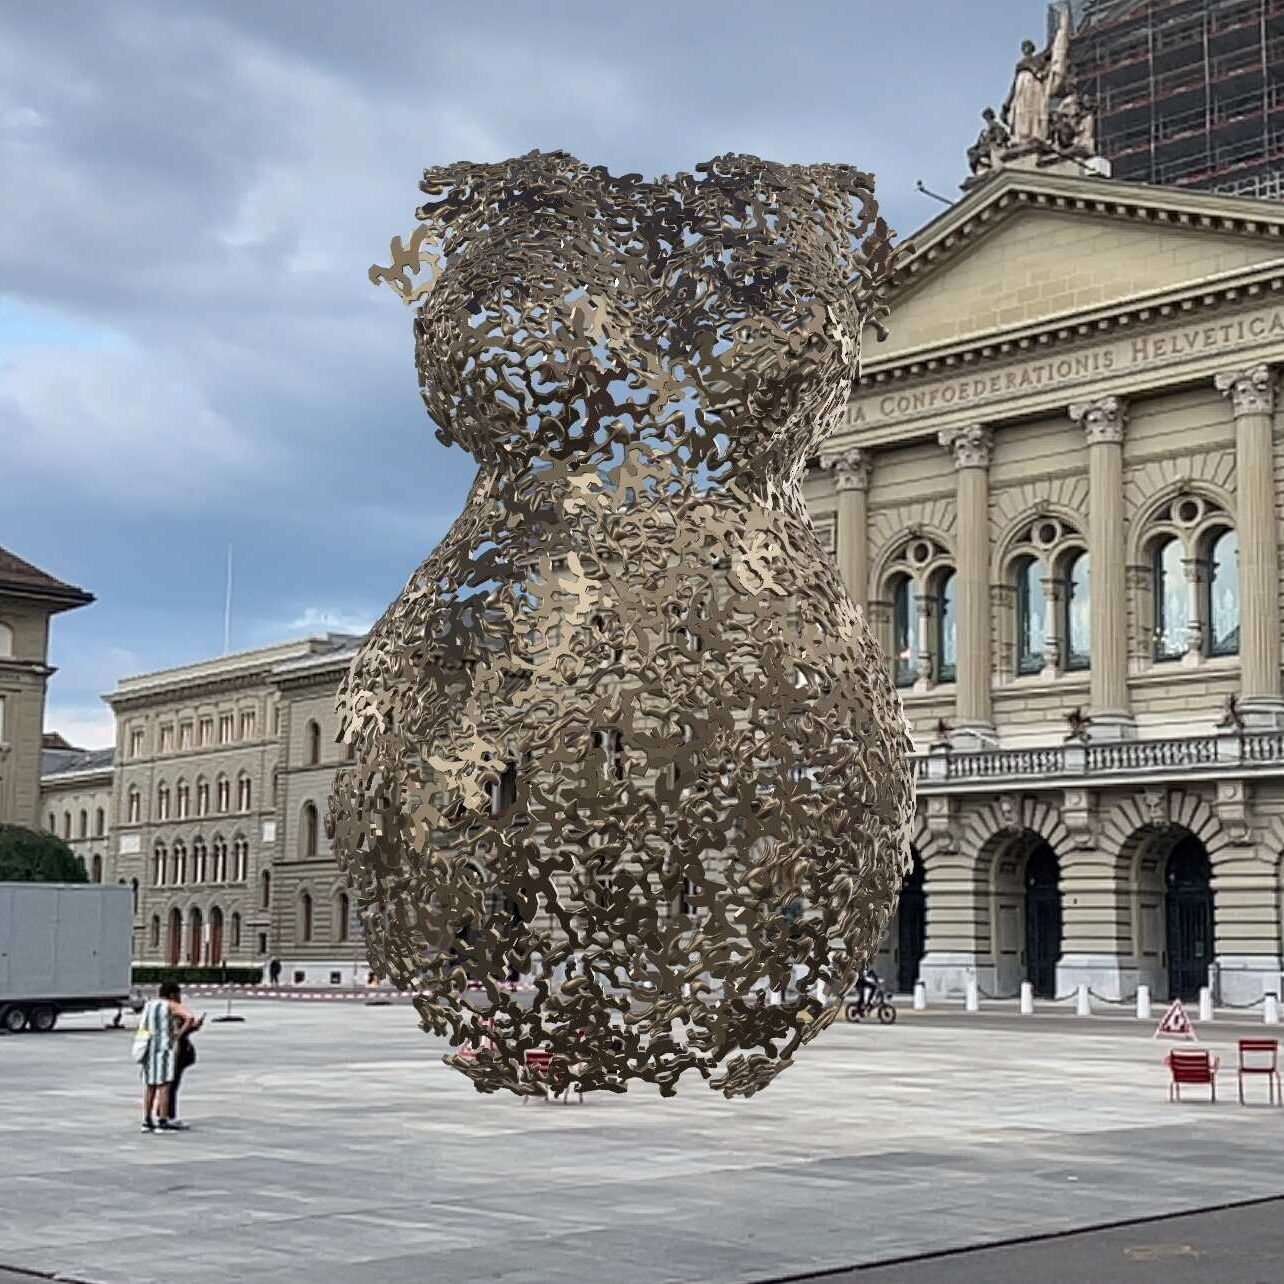 الواقع المعزز: منحوتة للفنانة أندريا ستال بتقنية الواقع المعزز أمام القصر الفيدرالي في برن